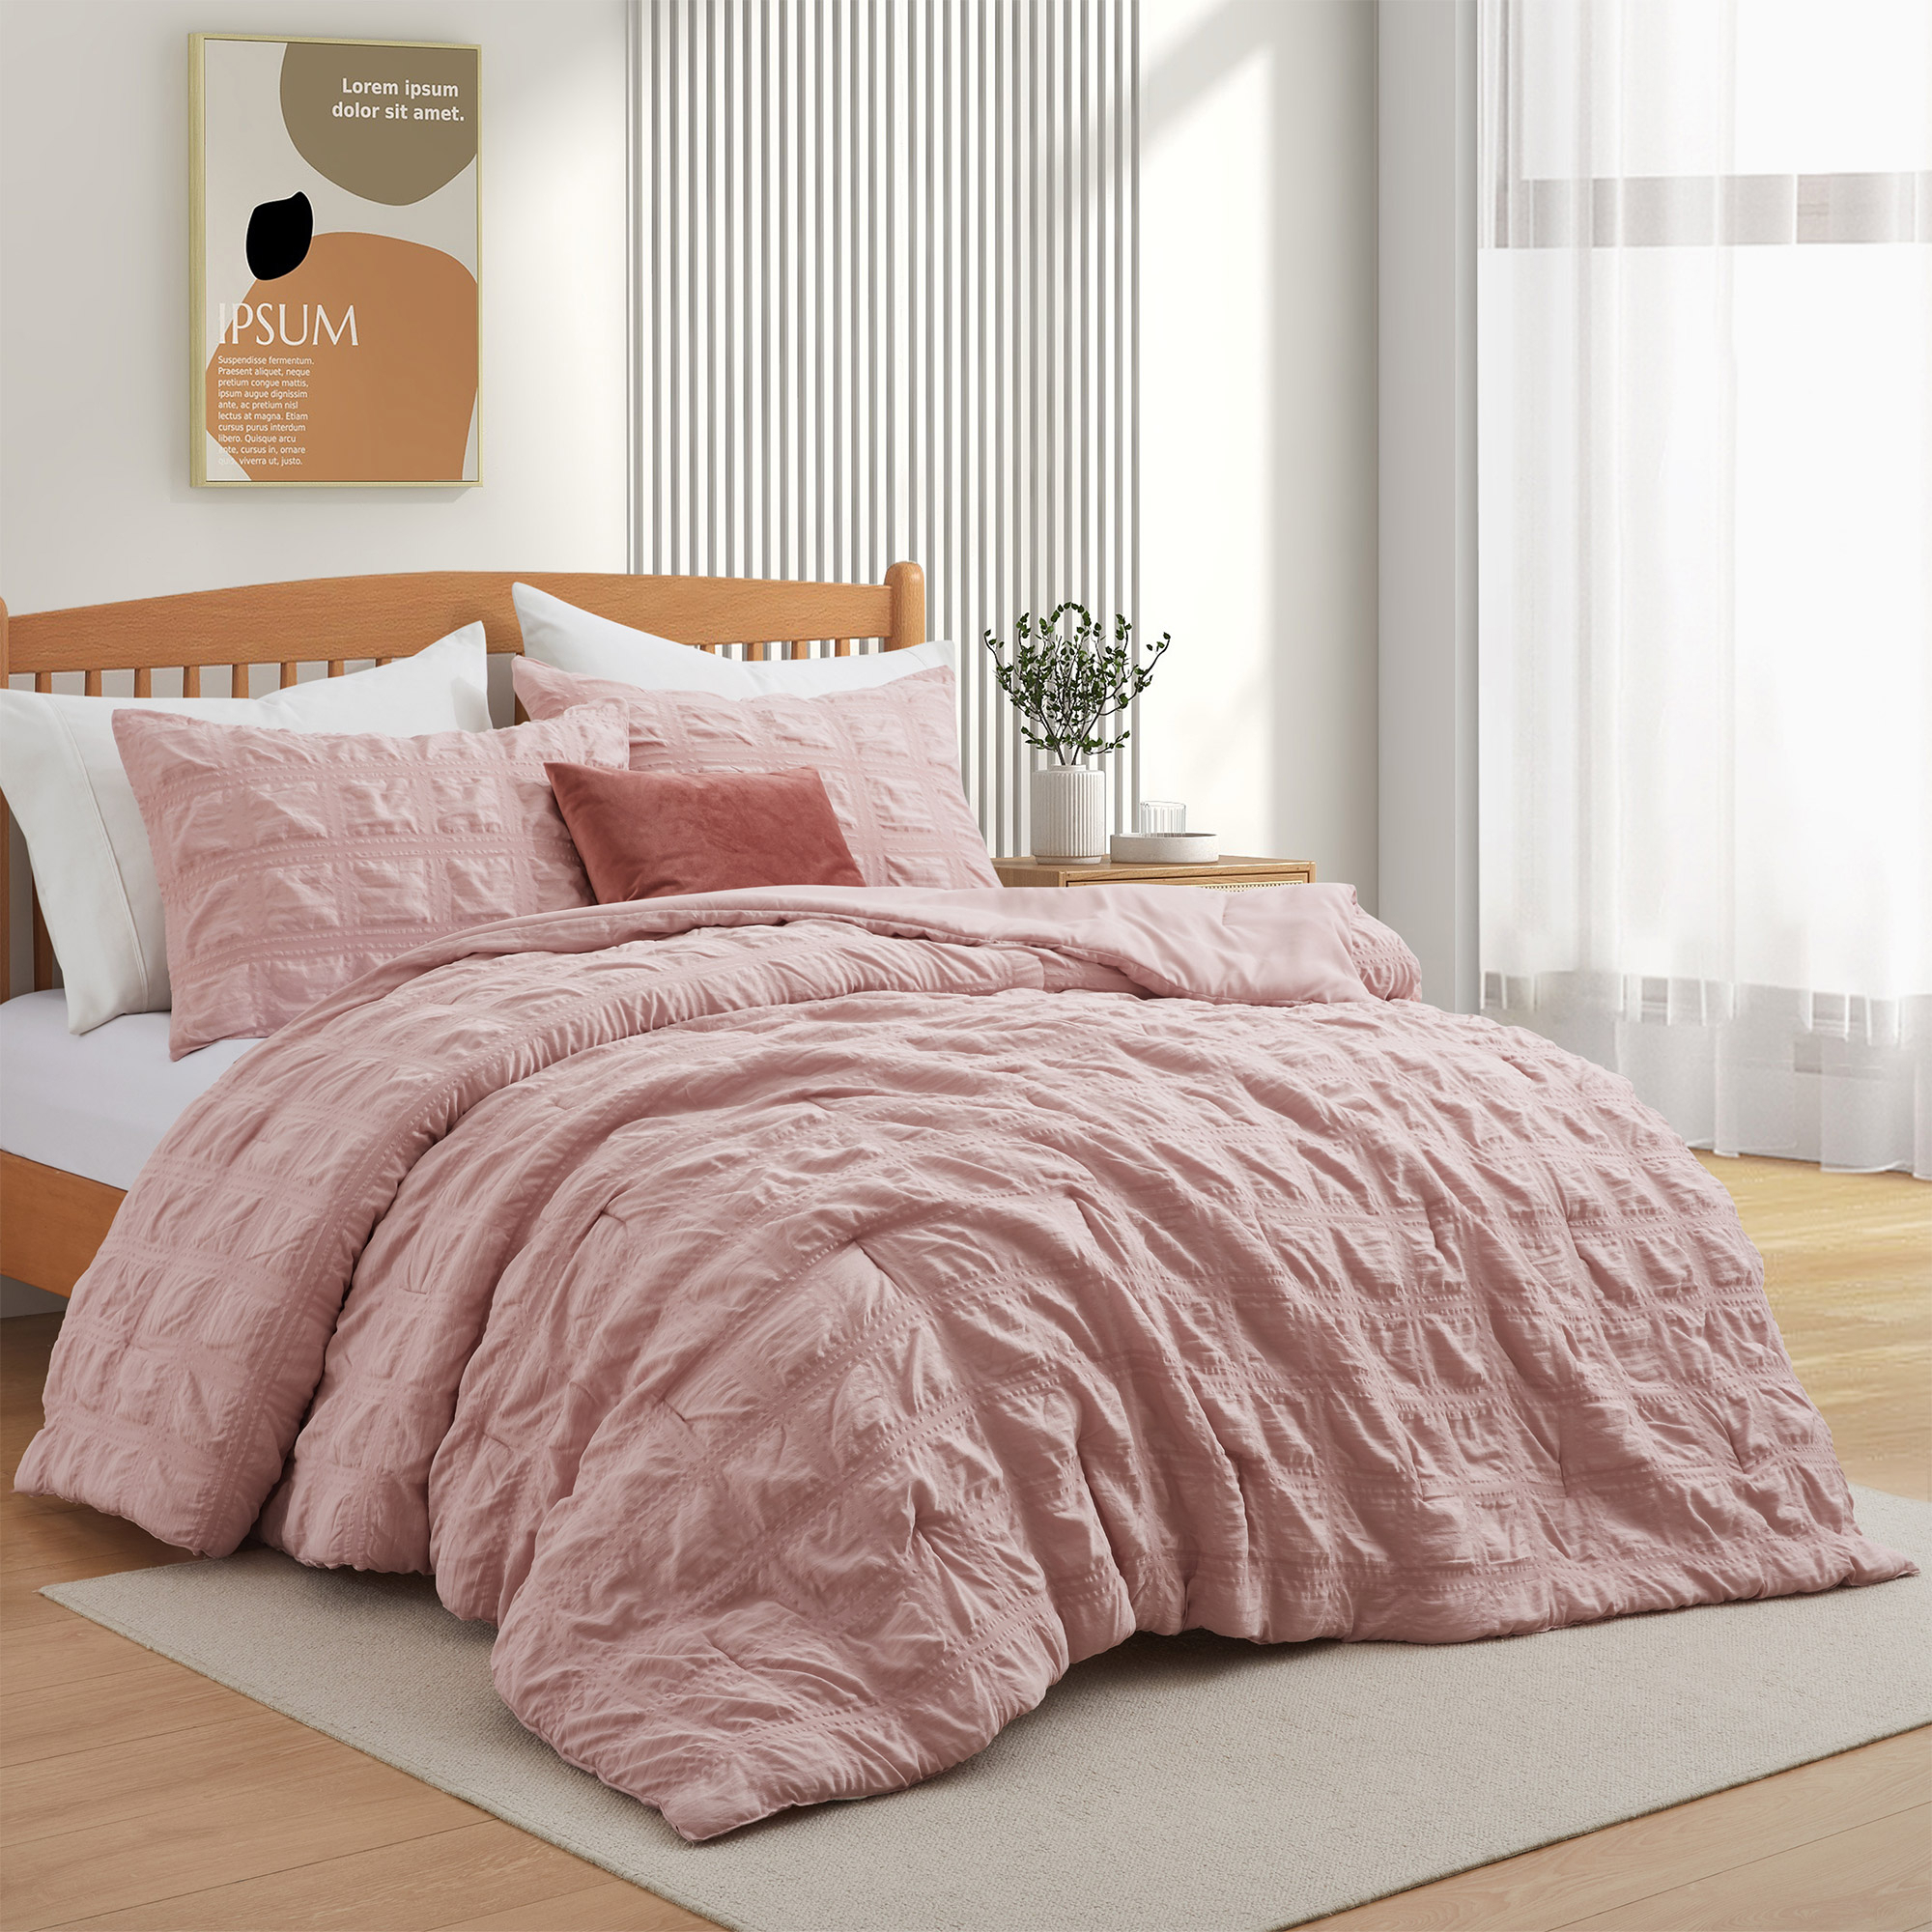 All Season Crinkle Textured Down Alternative Comforter Set-Seersucker Bedding Set - Pink, Full/Queen